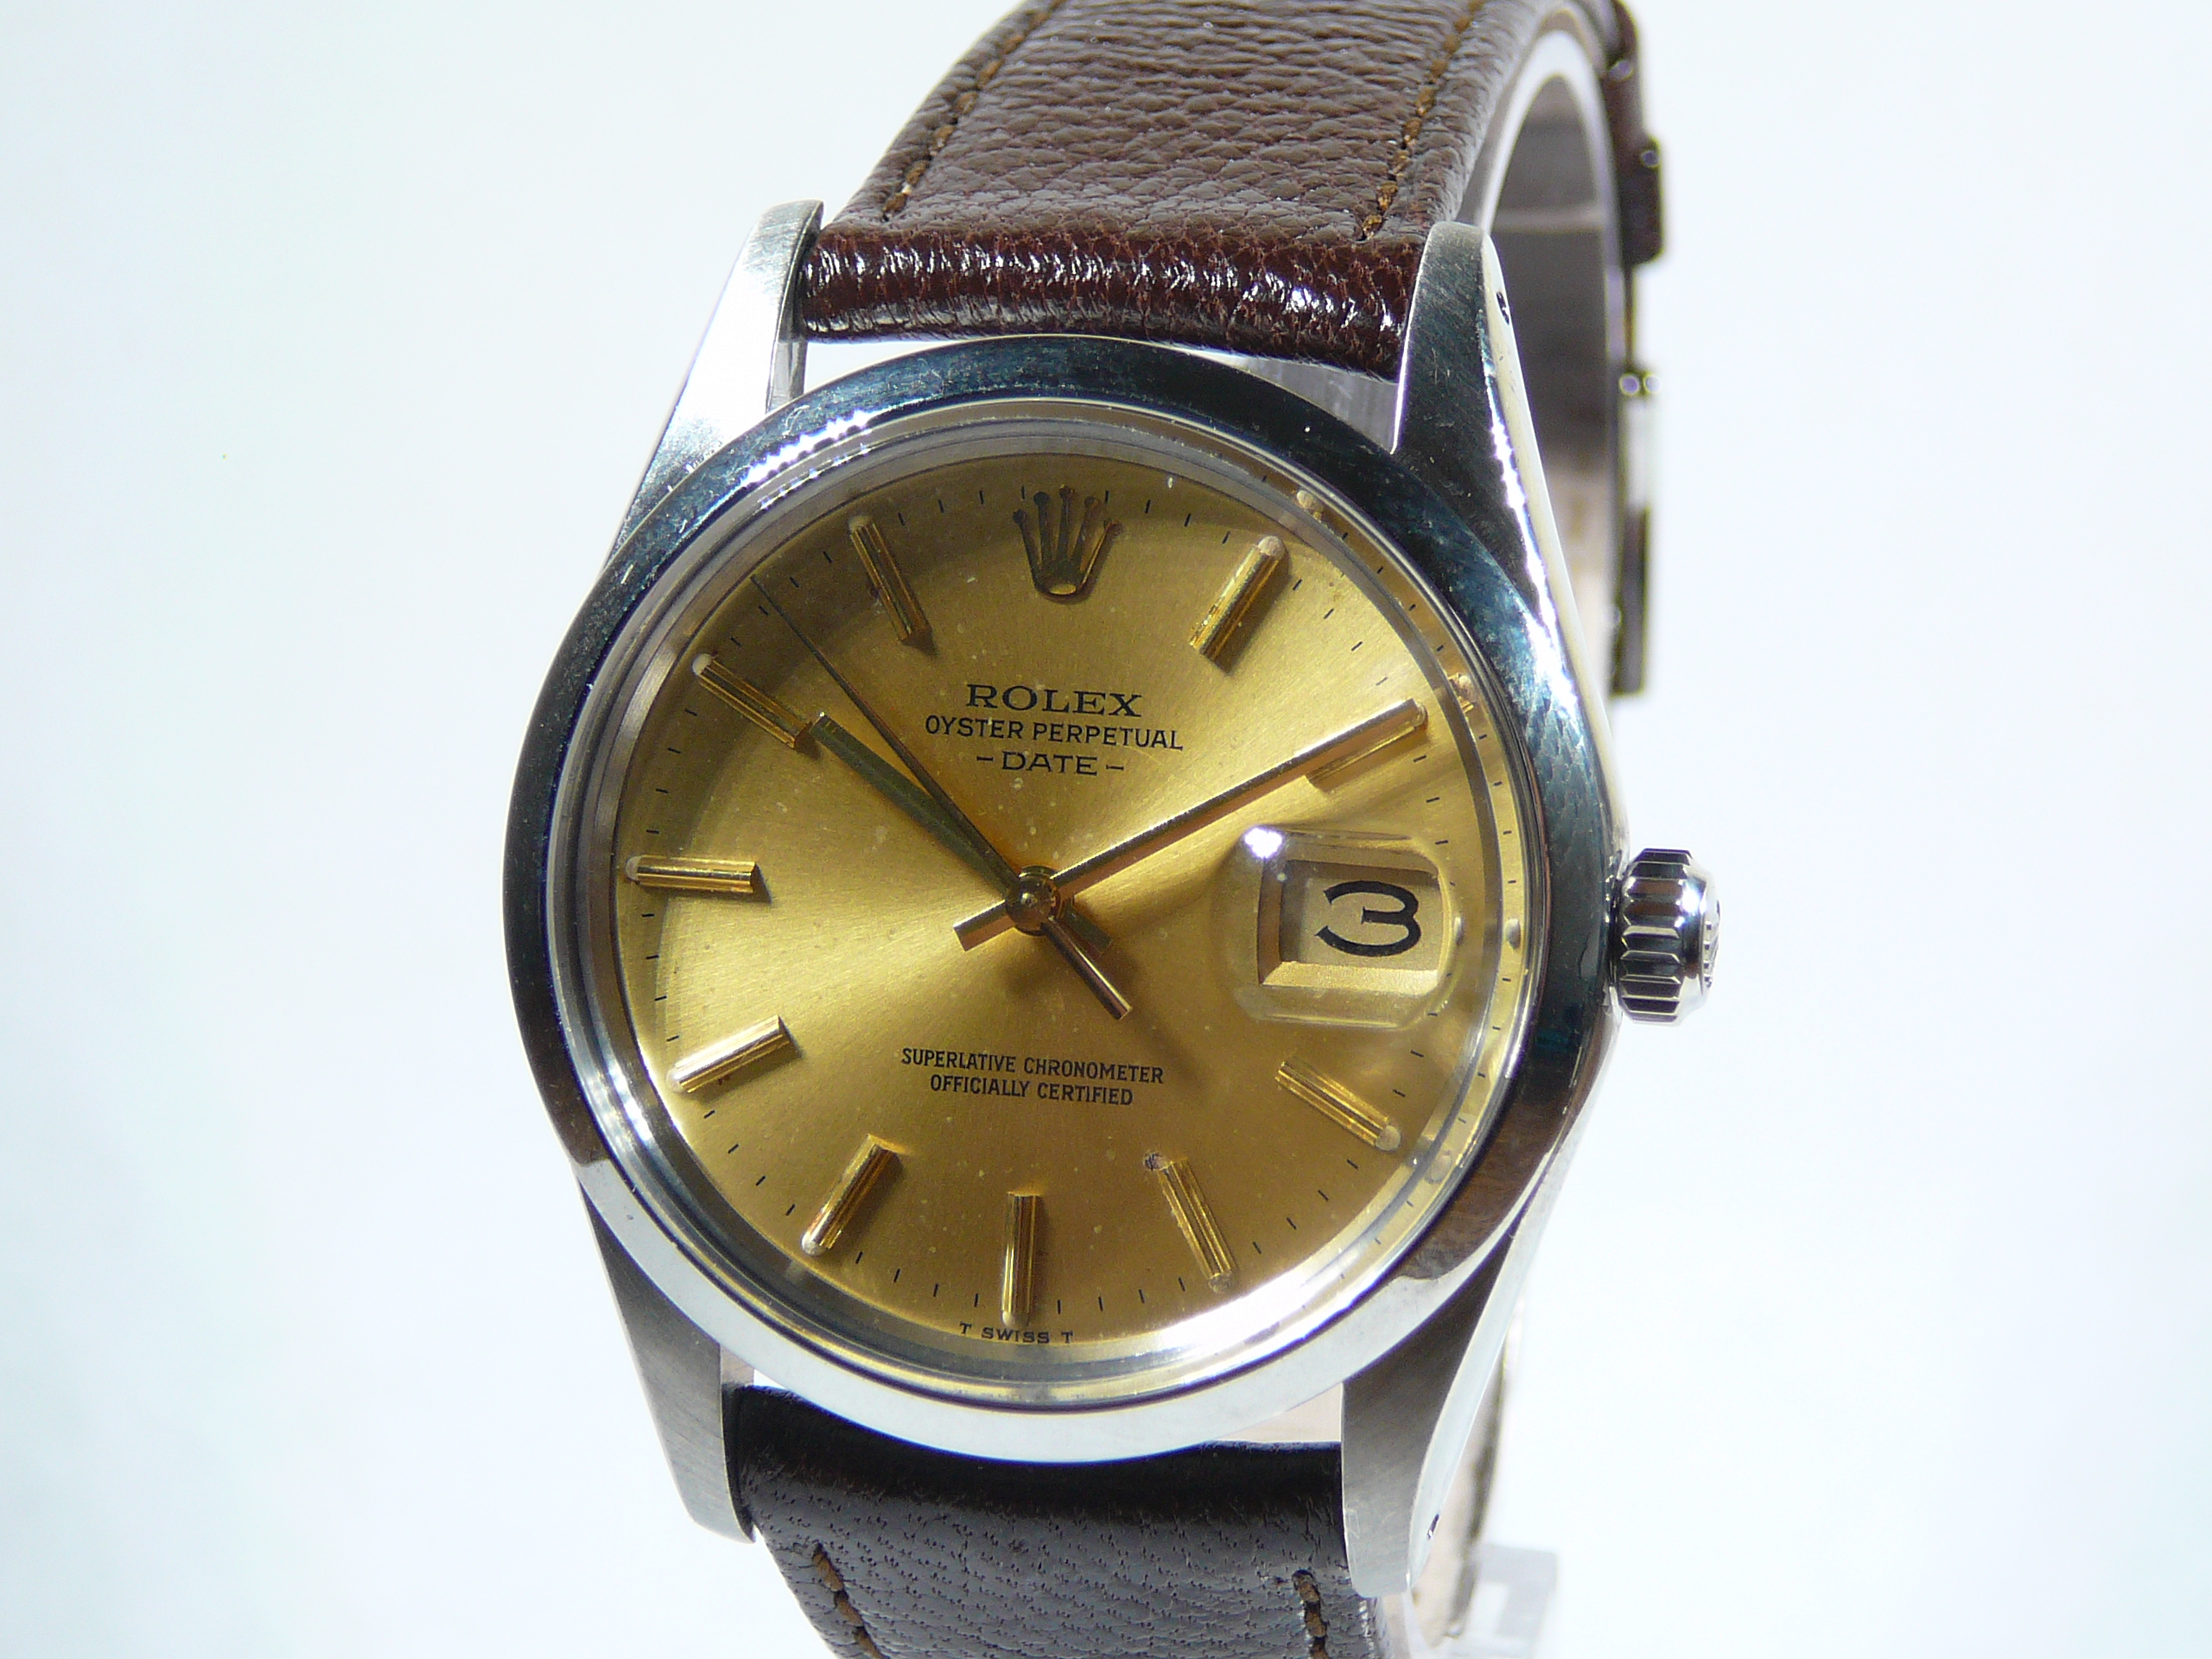 Gents Rolex Wrist Watch - Image 2 of 4